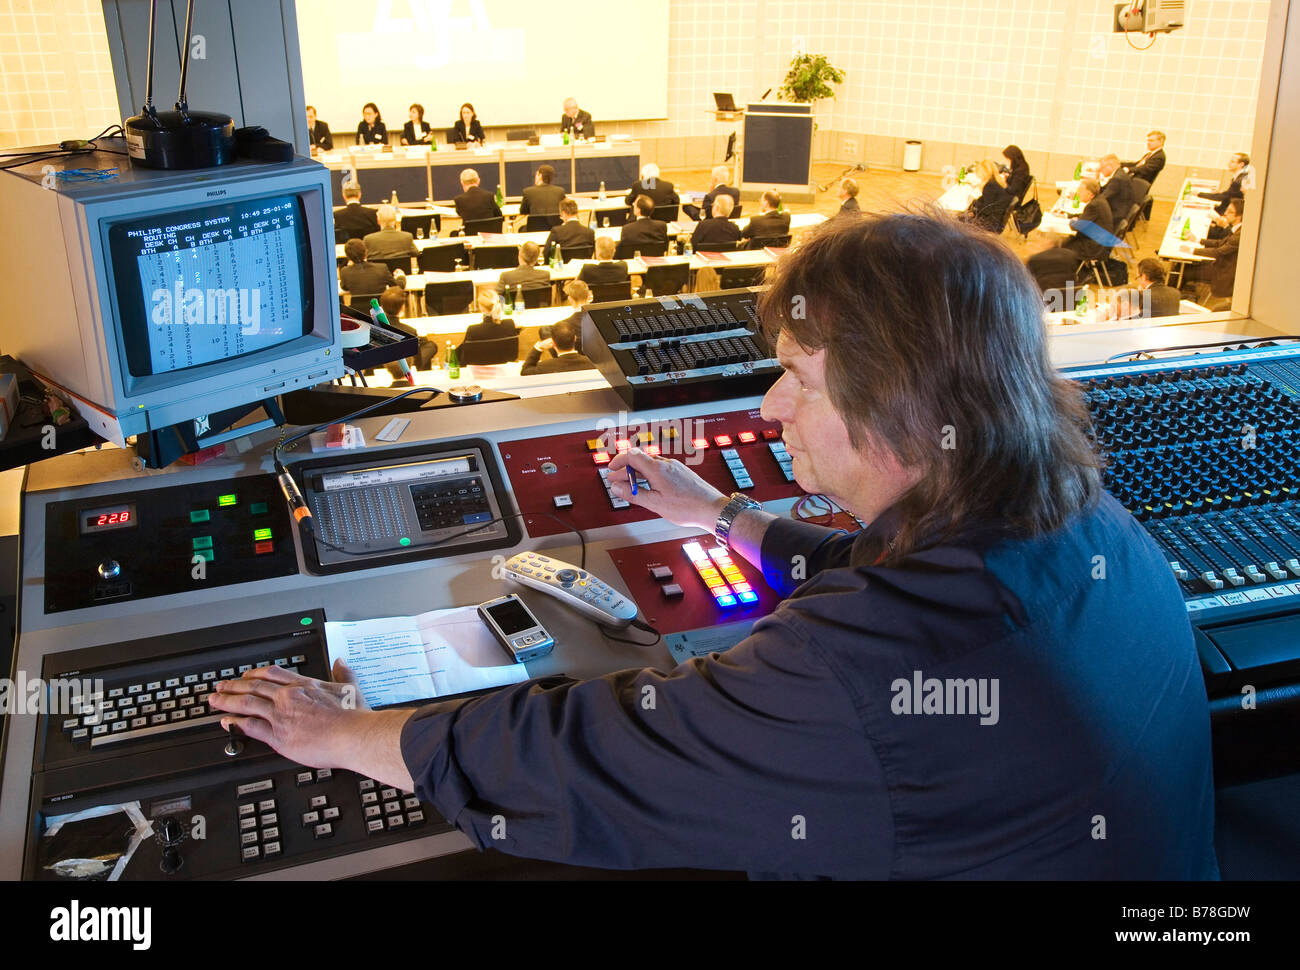 Suono e luce direttore presso il centro congressi della Messe Schweiz nel suono e luce cabina di comando su una sala congressi Foto Stock